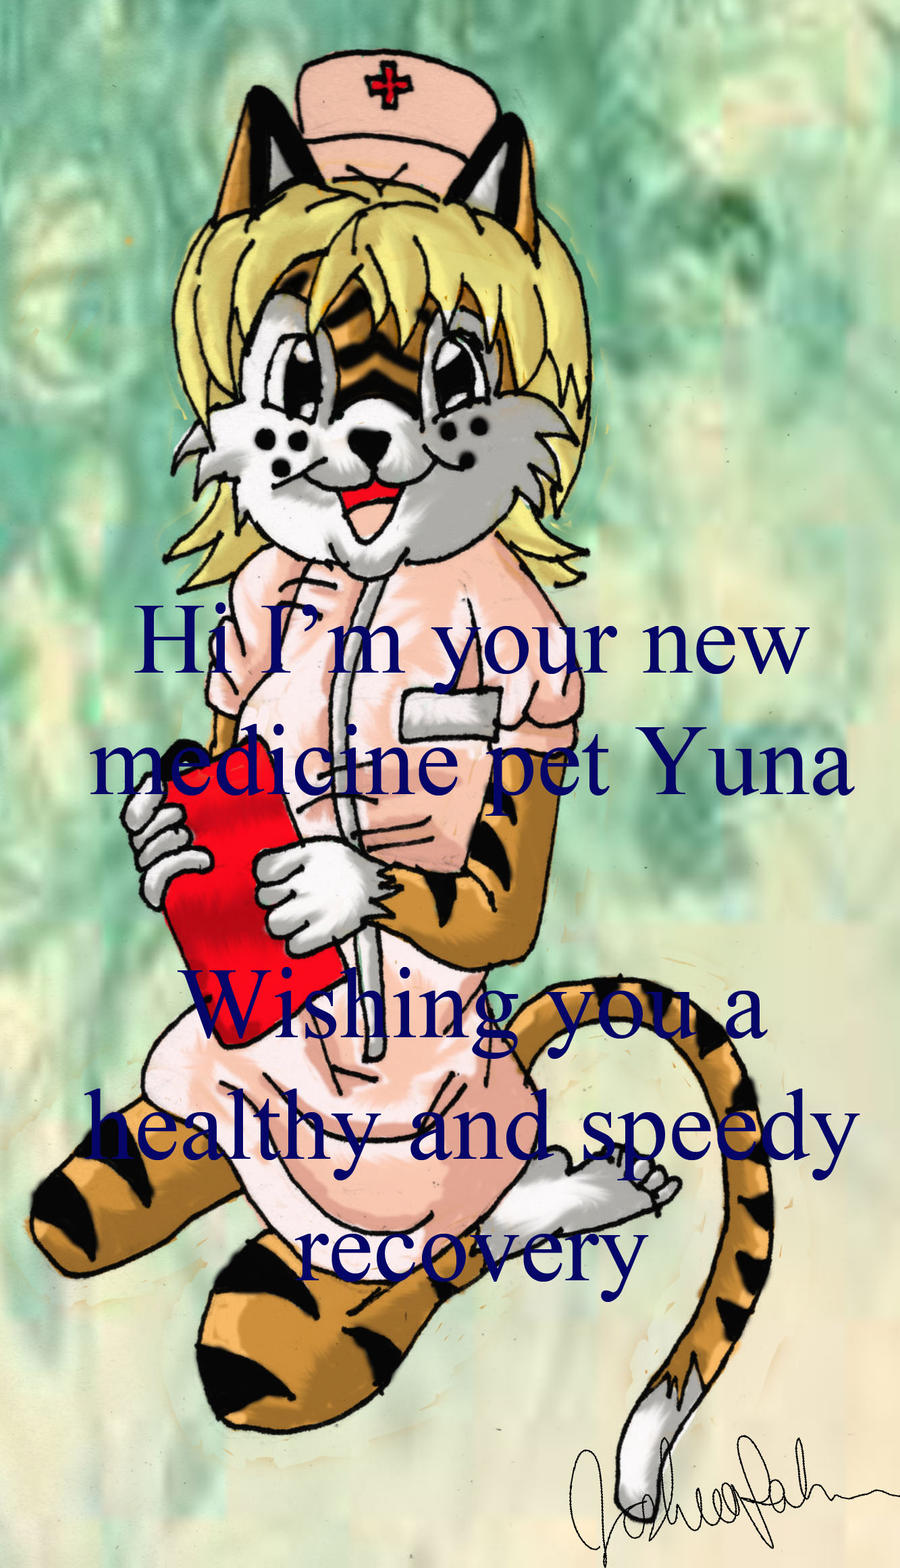 yuna the medicine pet